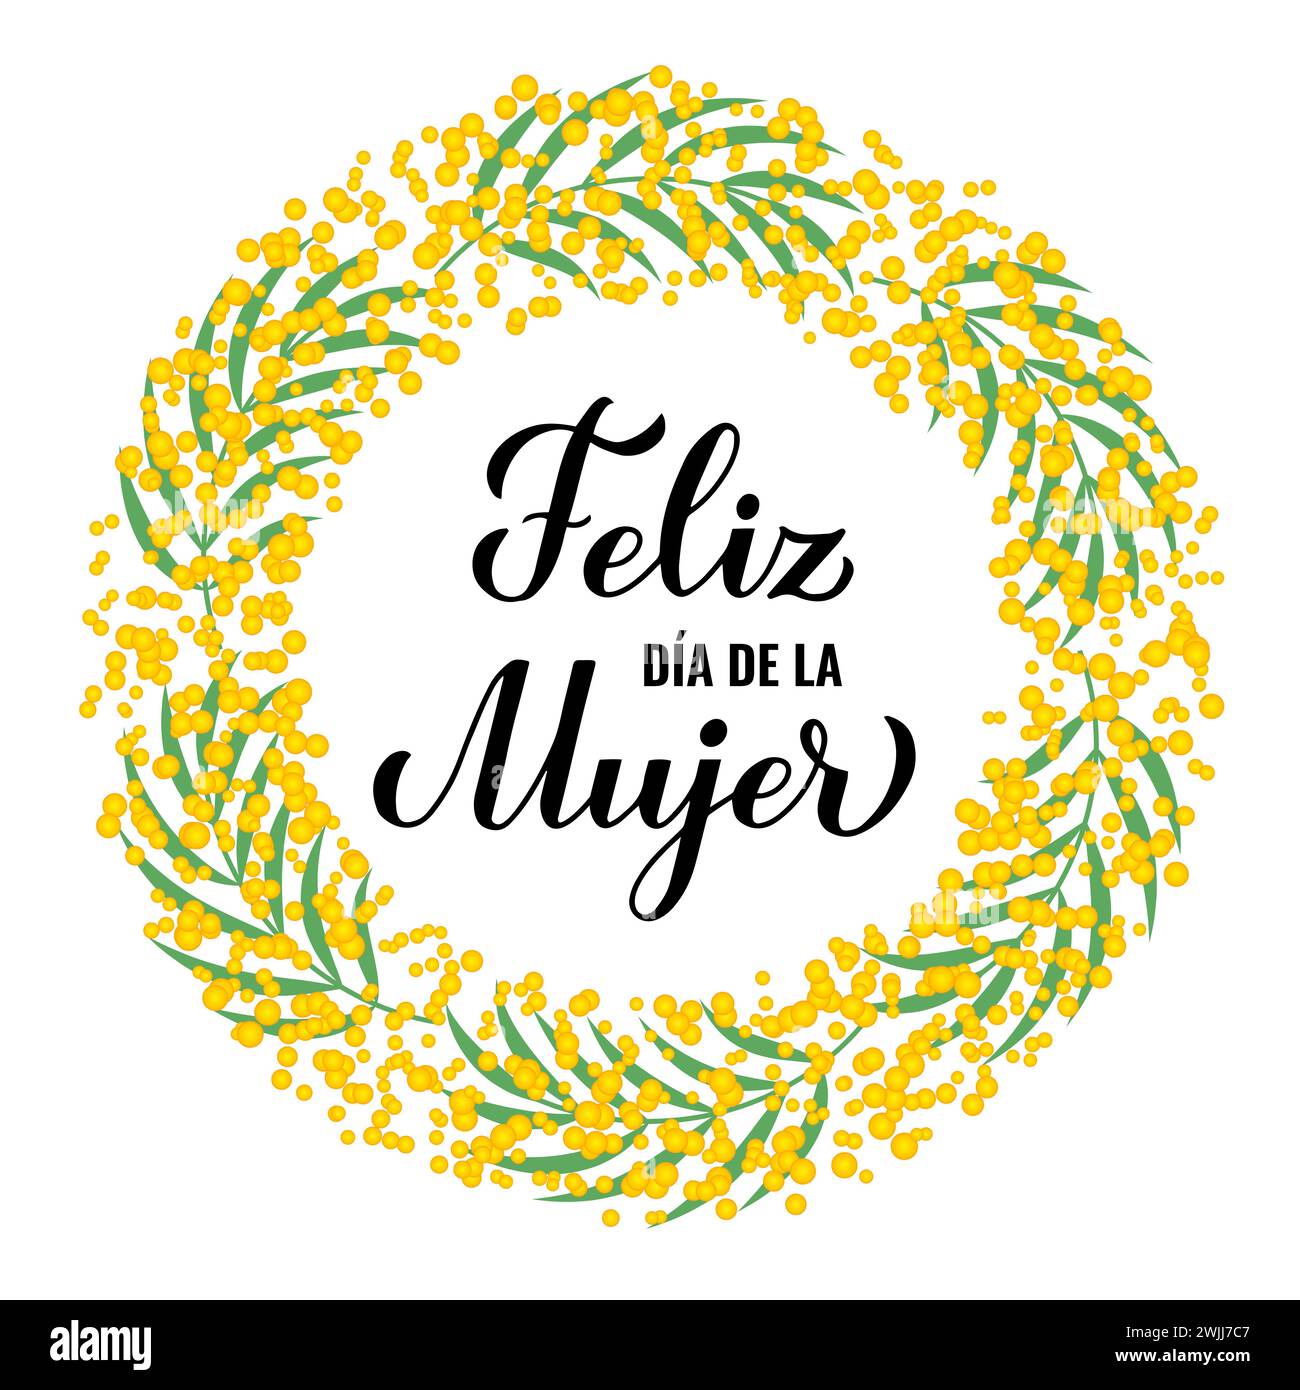 Feliz Dia de la Mujer - Happy Womens Day auf Spanisch. Kalligraphiebeschriftung mit Blumenkranz. Poster zur Typografie des Internationalen Frauentages. Vect Stock Vektor